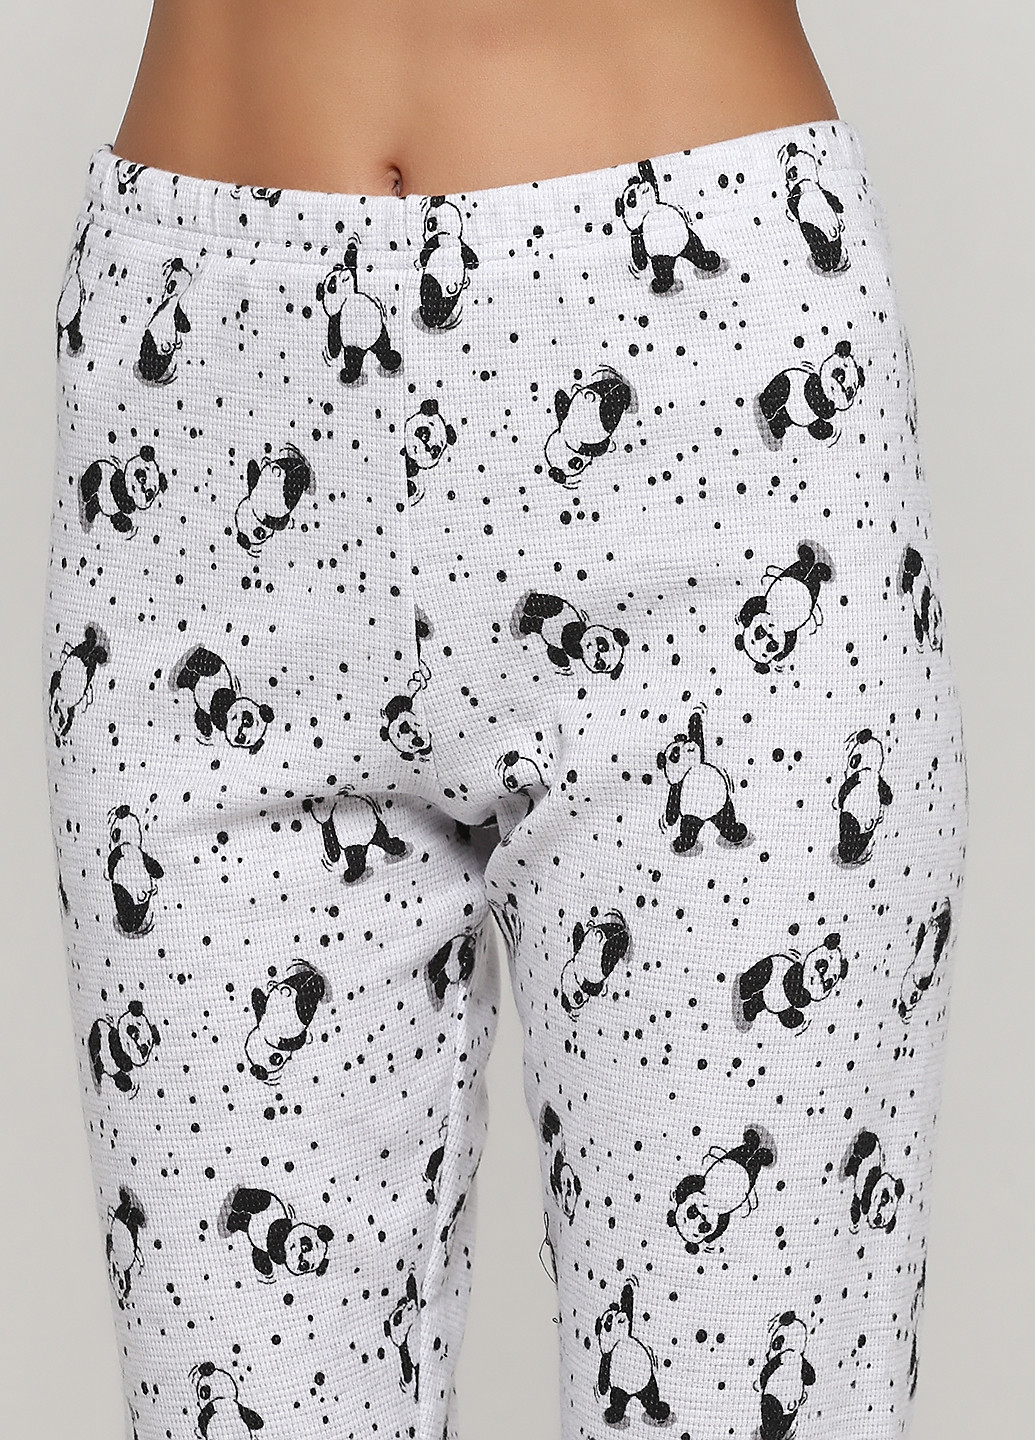 Черная всесезон пижама (свитшот, брюки) свитшот + брюки Vienetta